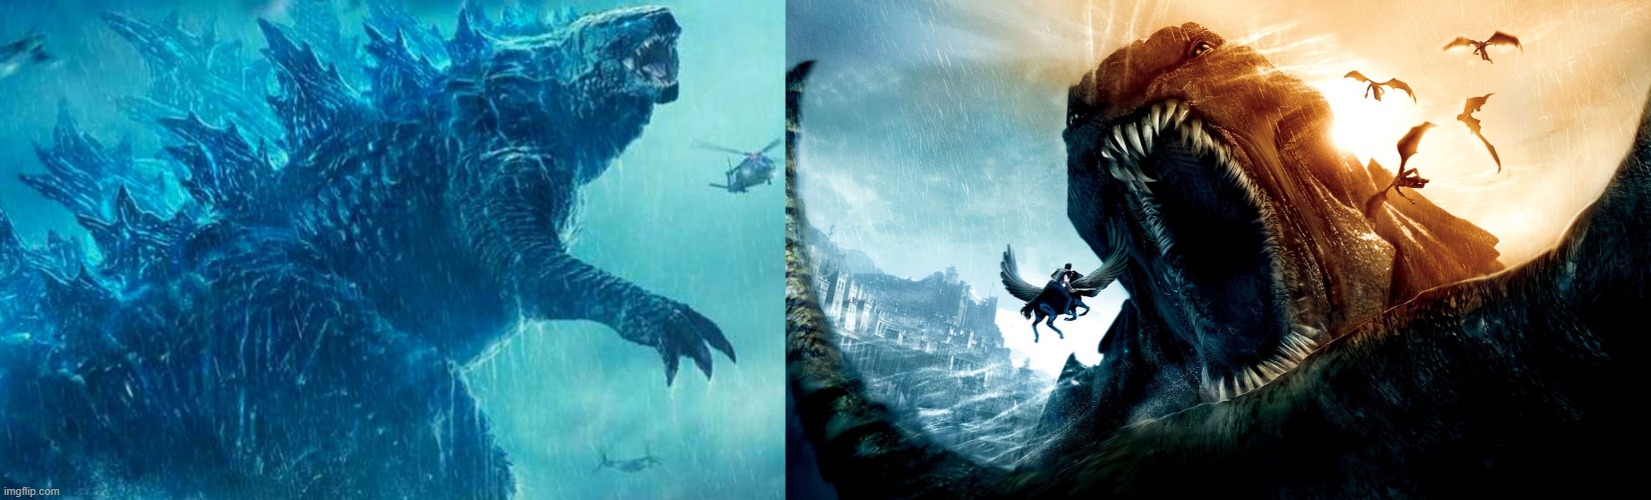 Godzilla vs. Kraken: 5 Reasons Godzilla Bites the Dust ...